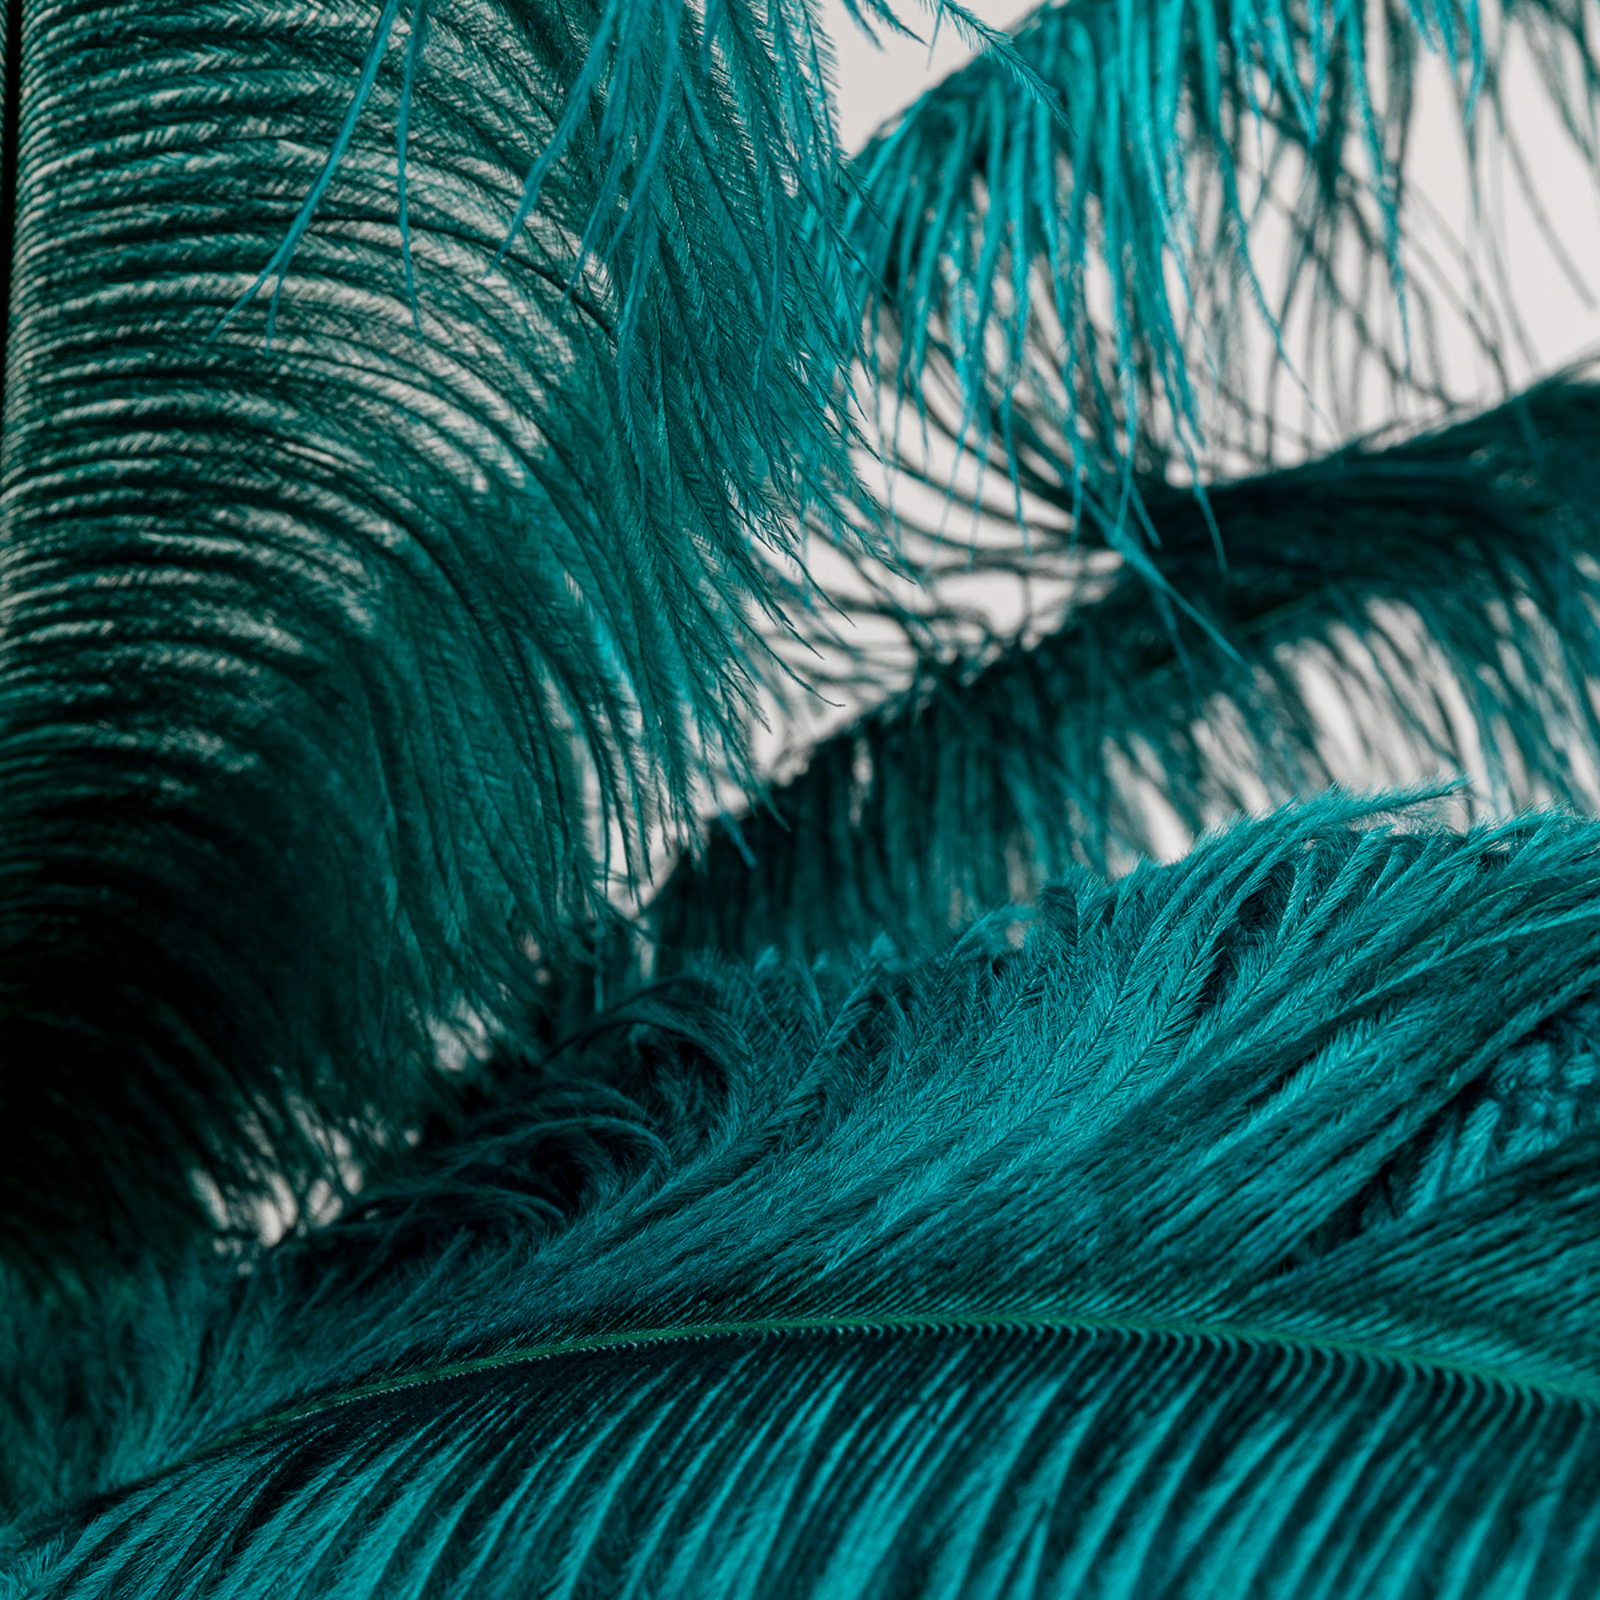 KARE Feather Palm vloerlamp met veren, groen